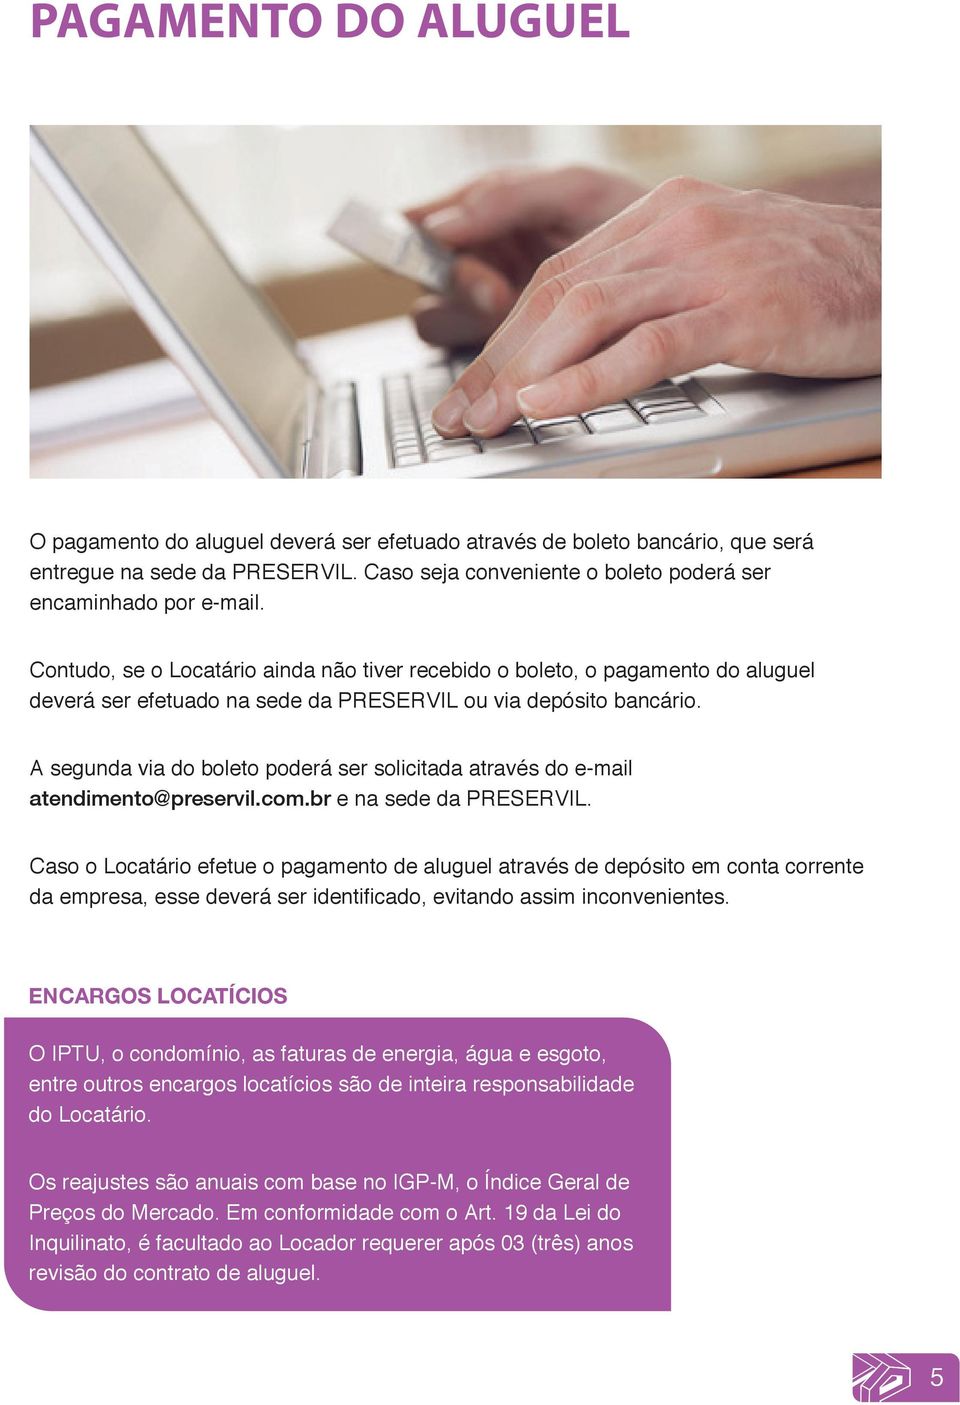 A segunda via do boleto poderá ser solicitada através do e-mail atendimento@preservil.com.br e na sede da PRESERVIL.